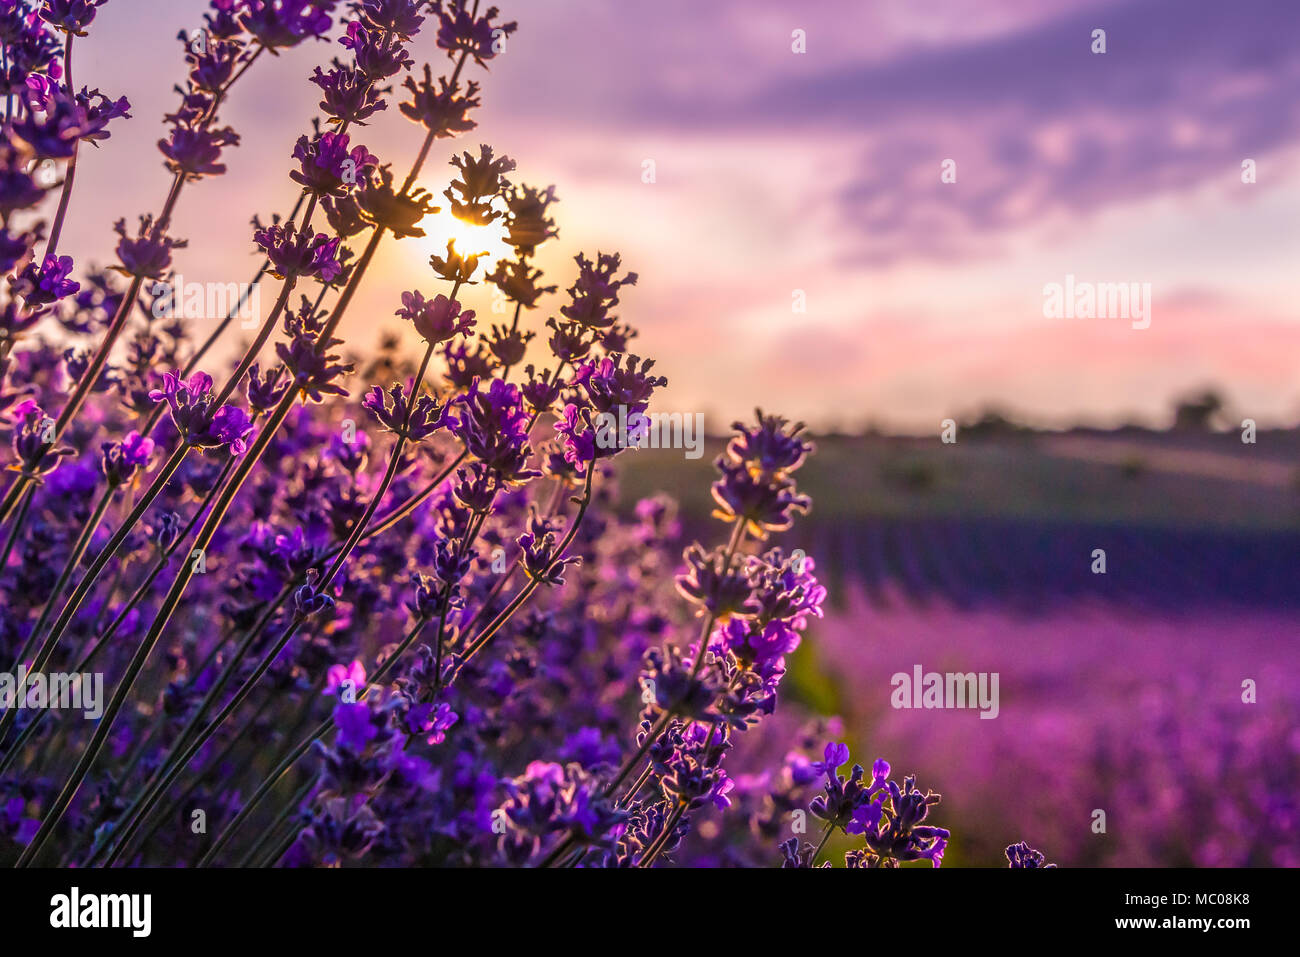 In der Nähe von blühenden Lavendel Blumen unter dem Sommer Sonnenuntergang strahlen. Stockfoto